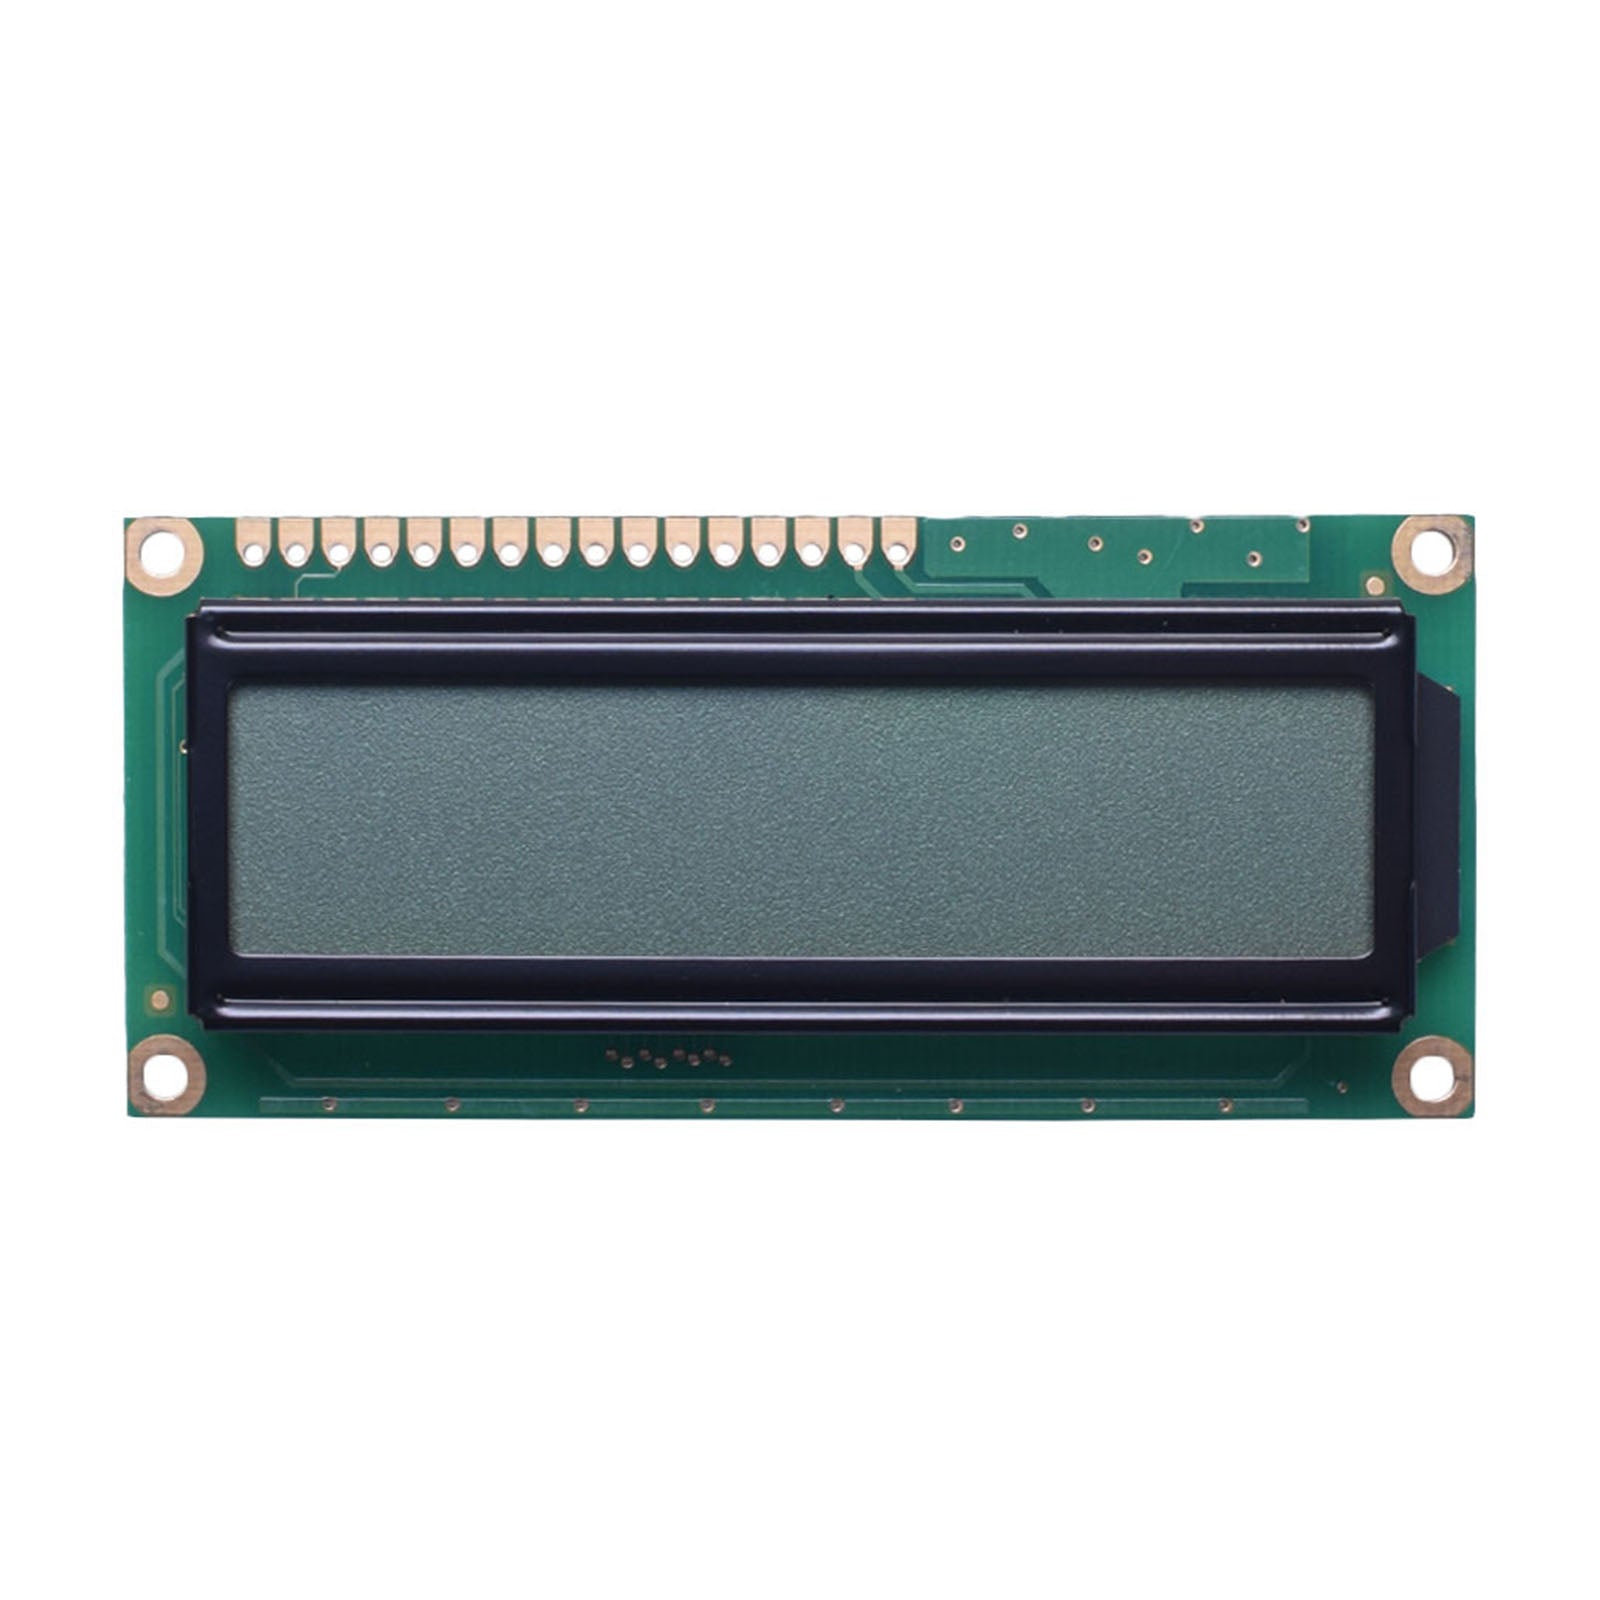 DisplayModule 16x1 Character LCD - MCU